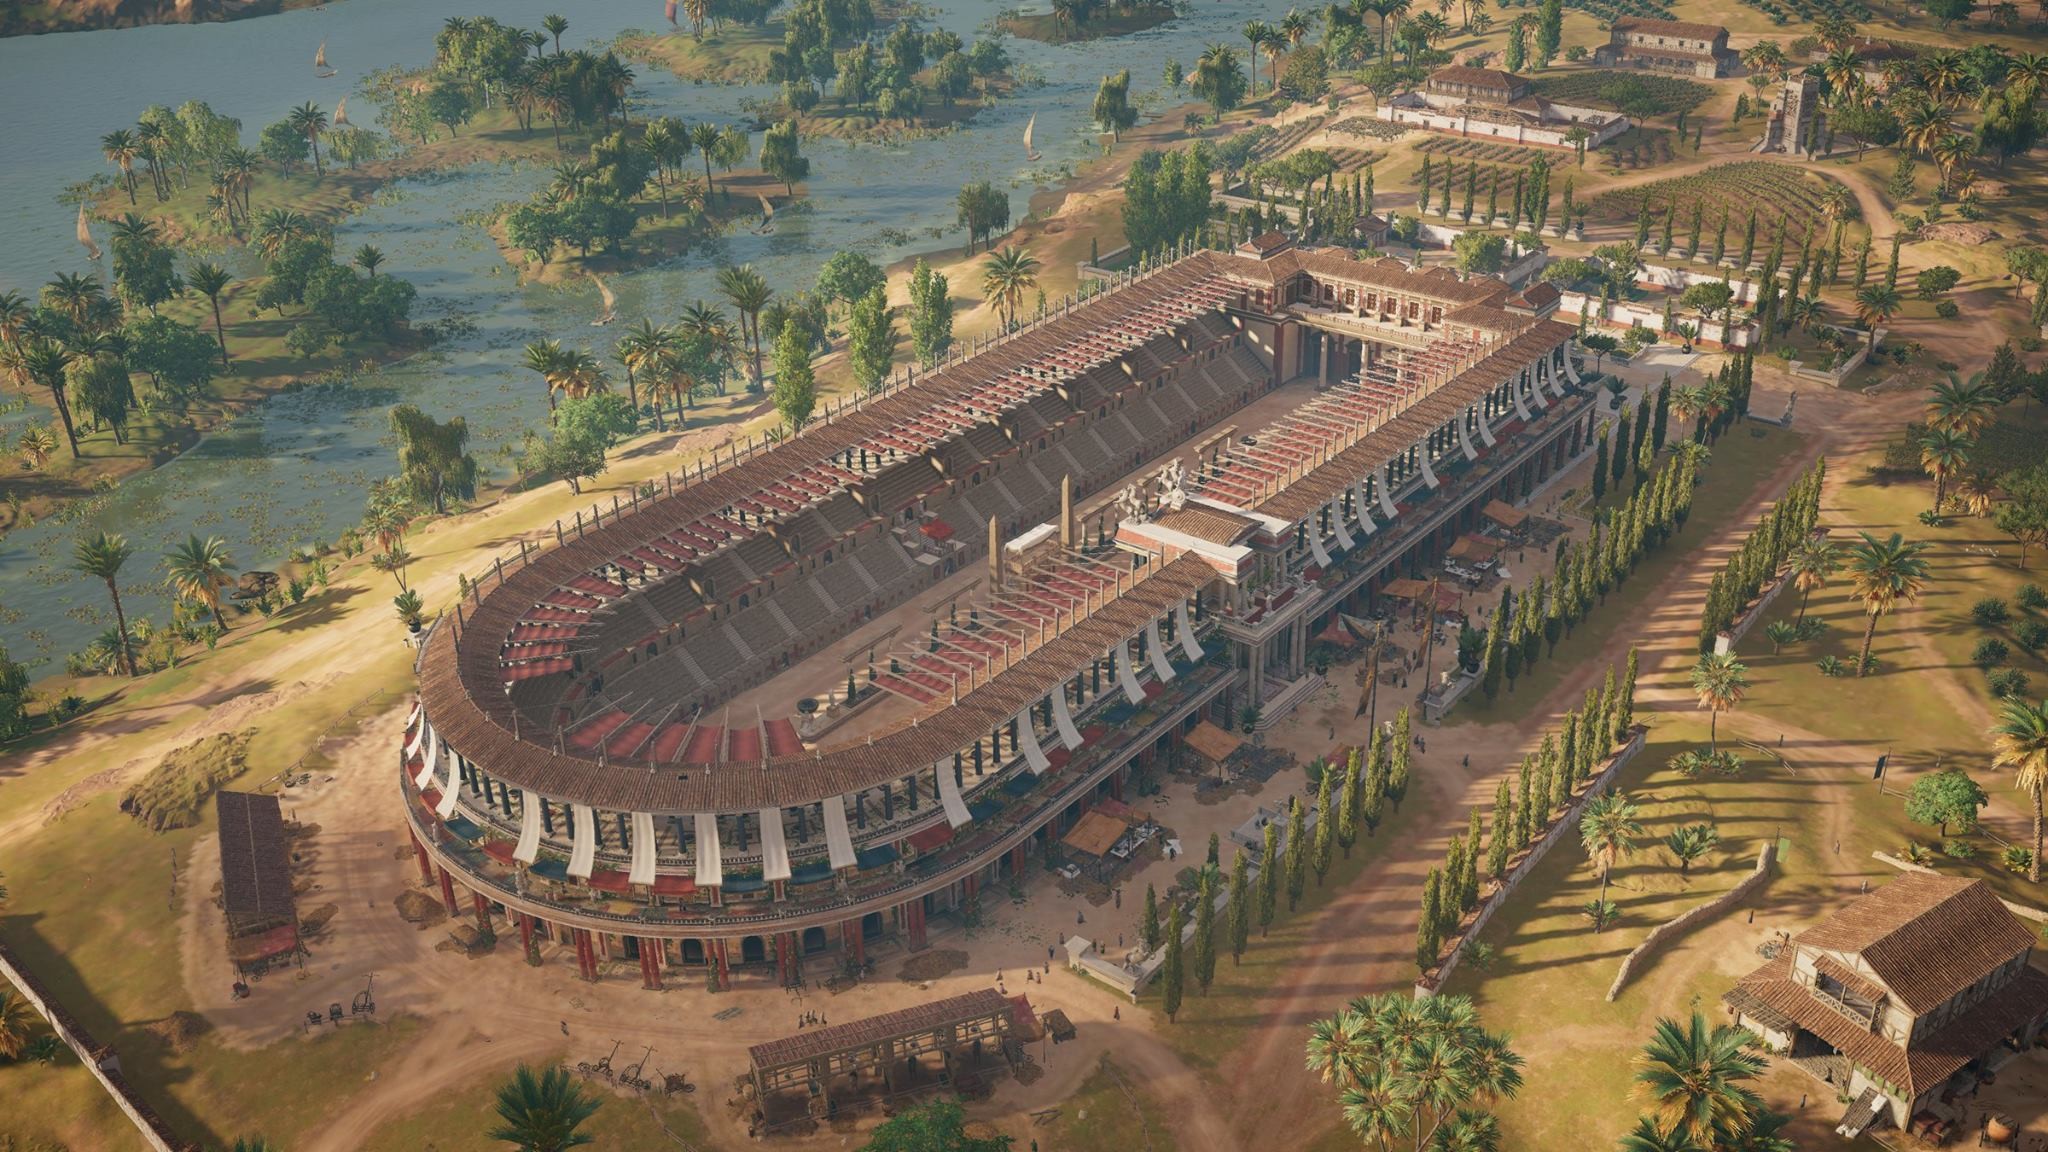 Древний рим это египет